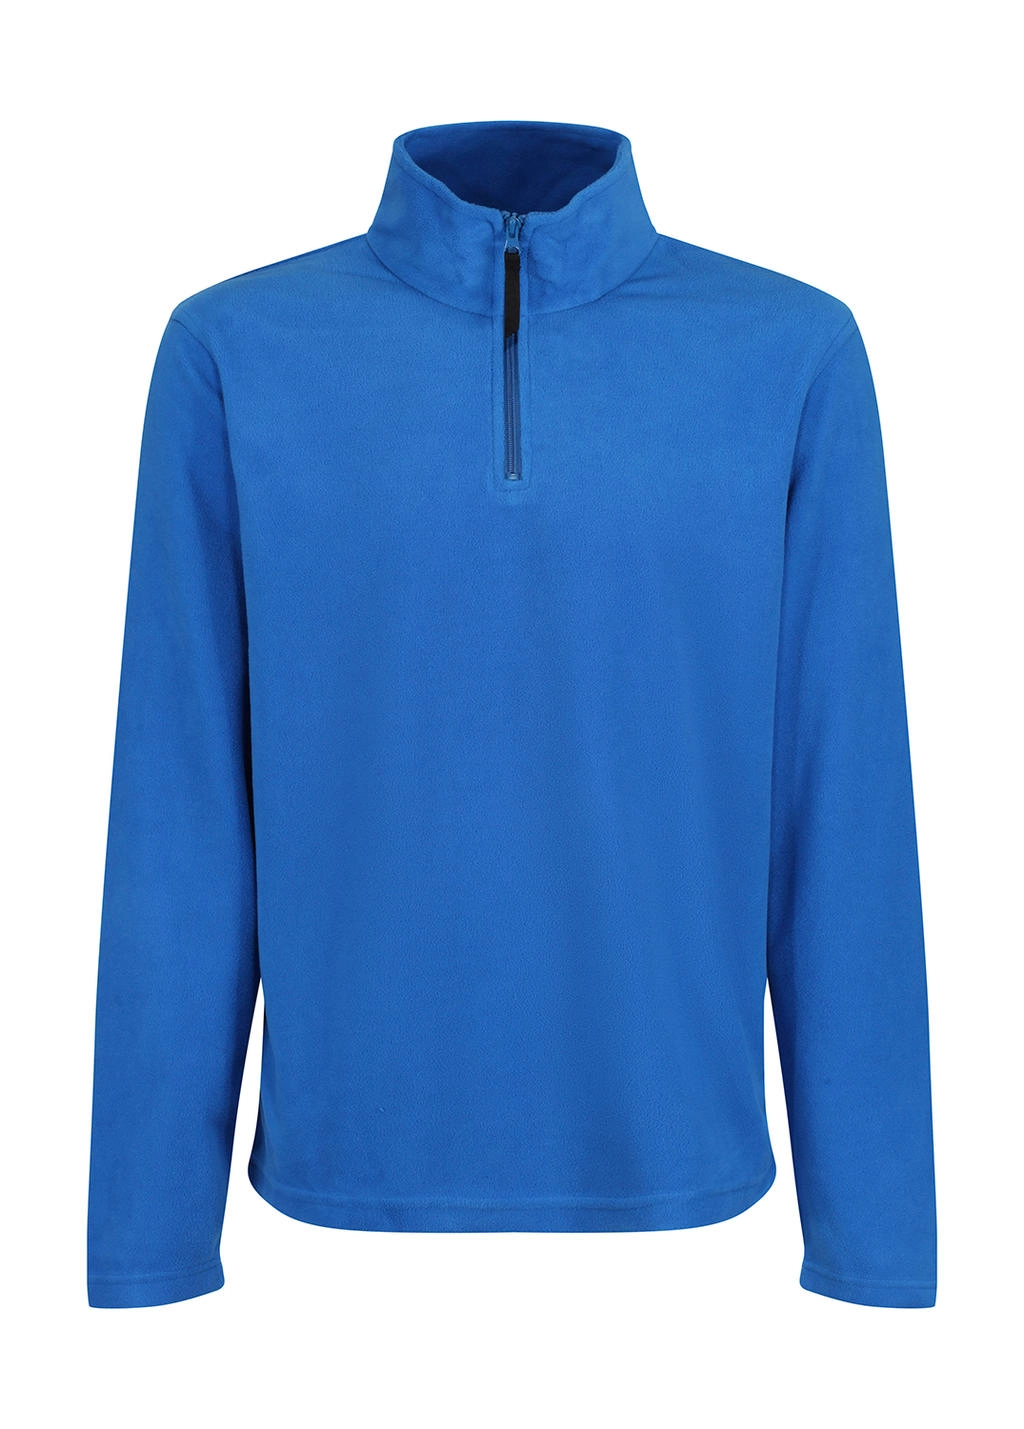 Micro Zip Neck Fleece zum Besticken und Bedrucken in der Farbe Oxford Blue mit Ihren Logo, Schriftzug oder Motiv.